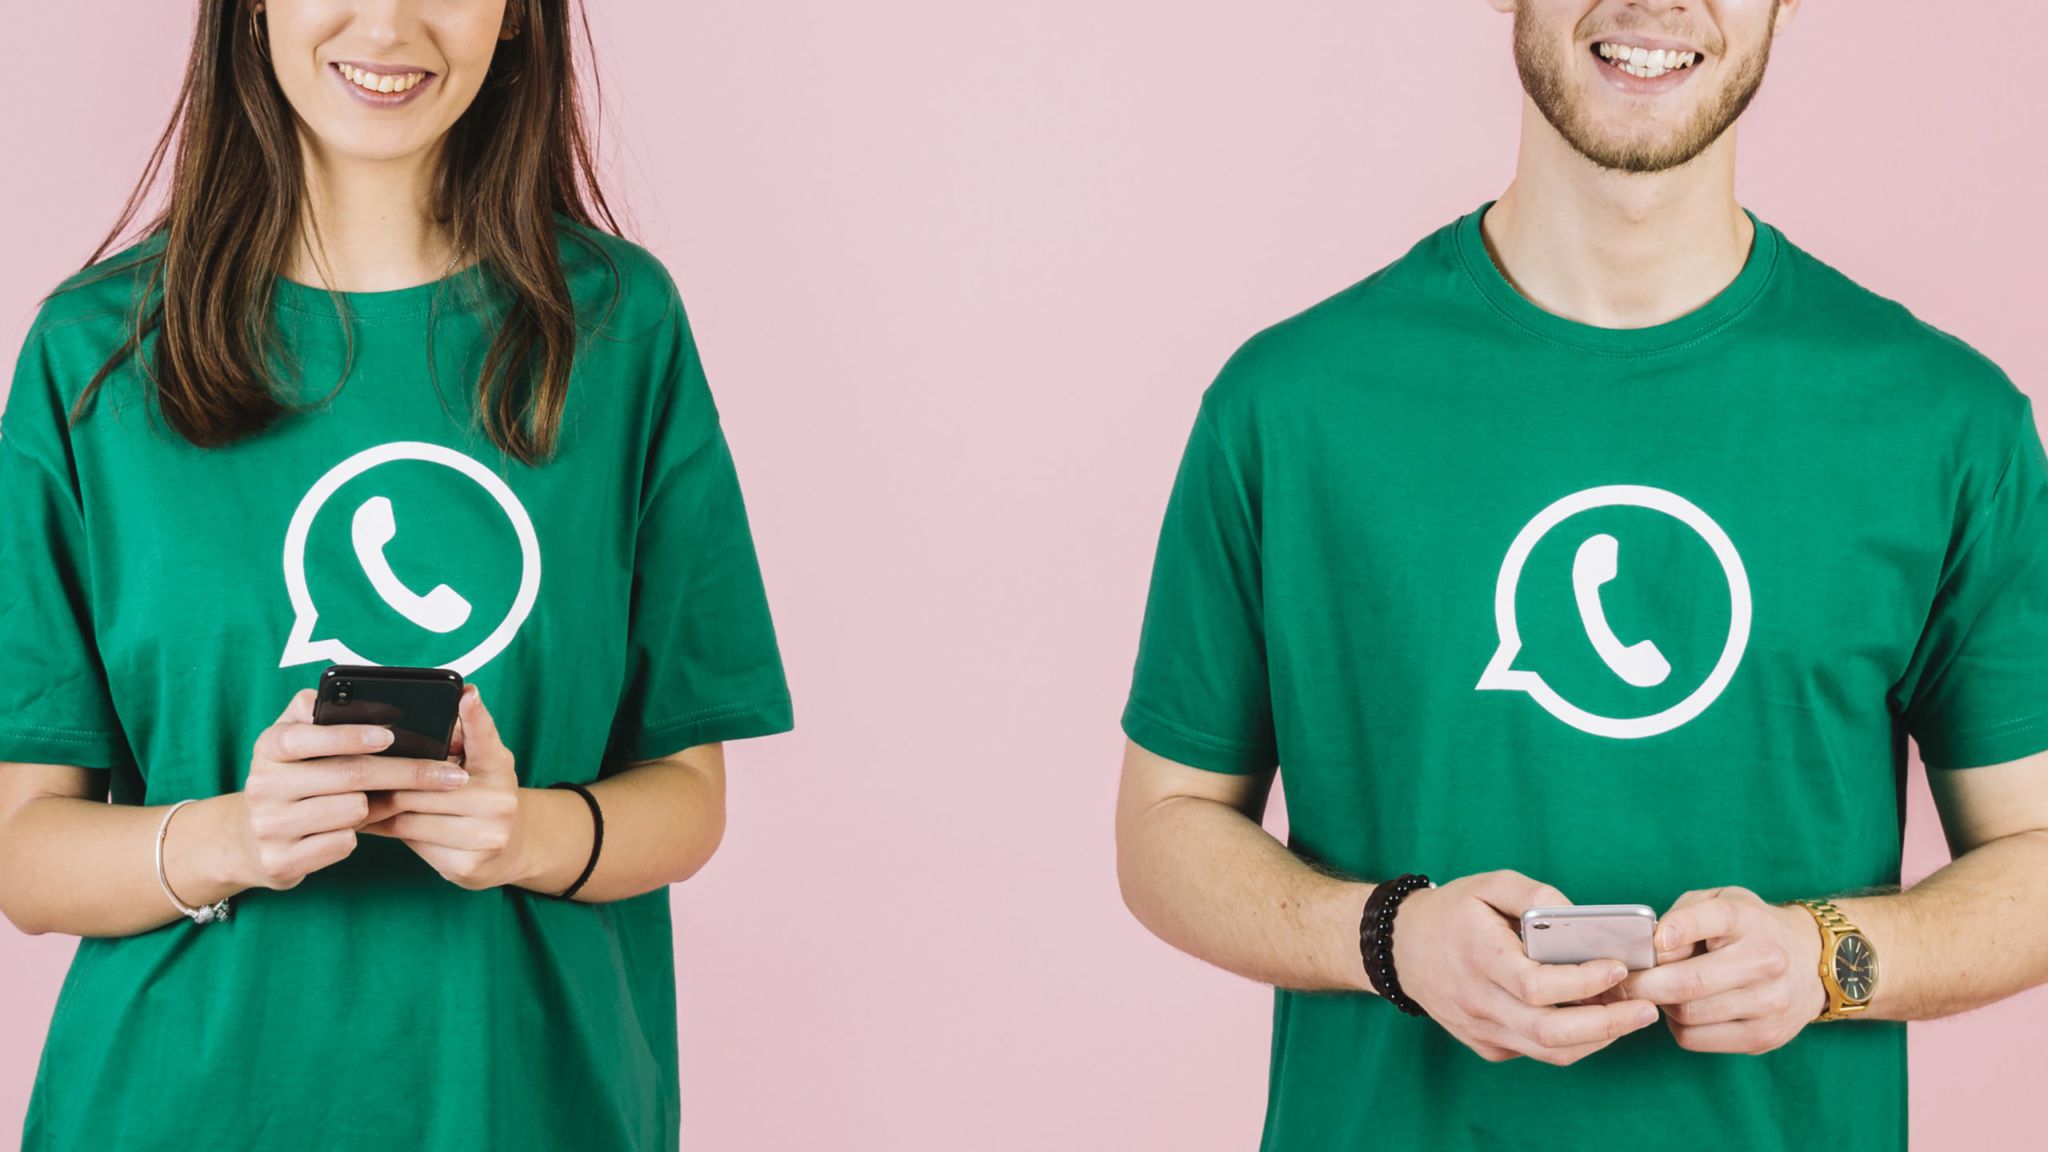 Weni WhatsApp Business: WhatsApp API + Rocket.Chat to reduce costs